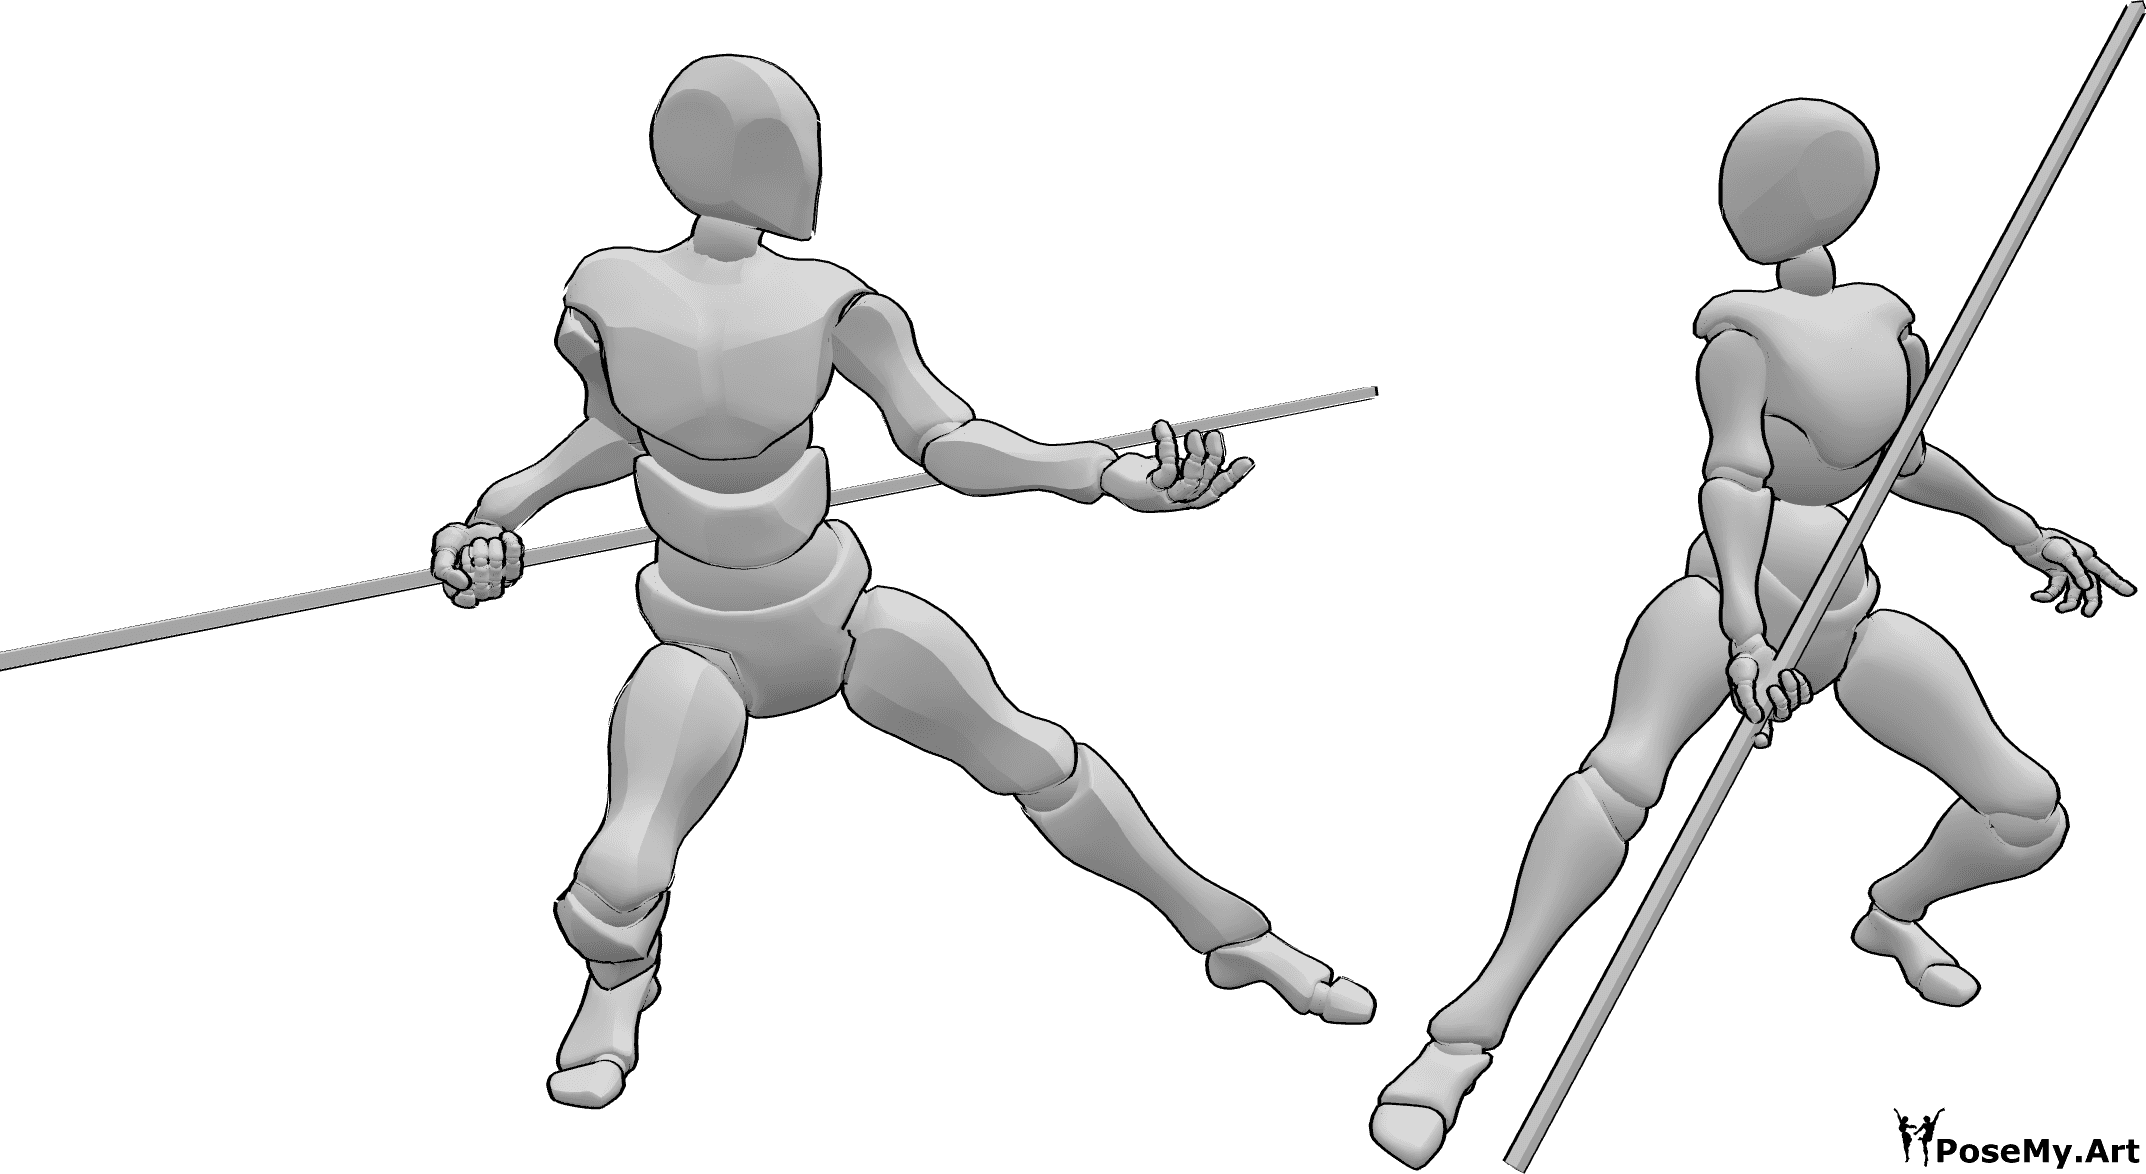 Référence des poses- Femme homme pose de combat - La femelle et le mâle commencent à se disputer la pose